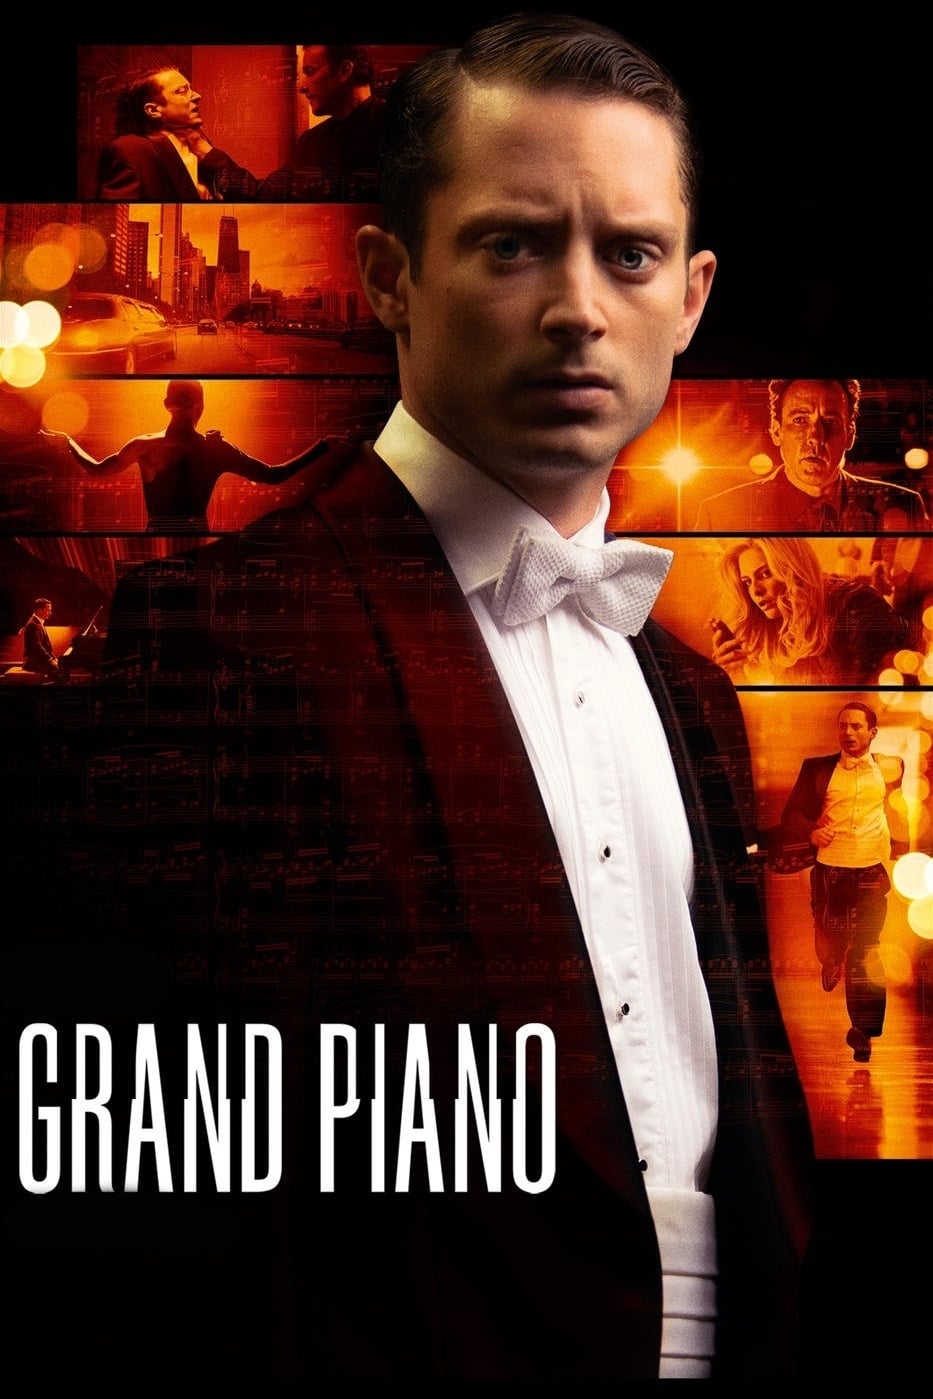 Caratula de GRAND PIANO (Grand piano) 